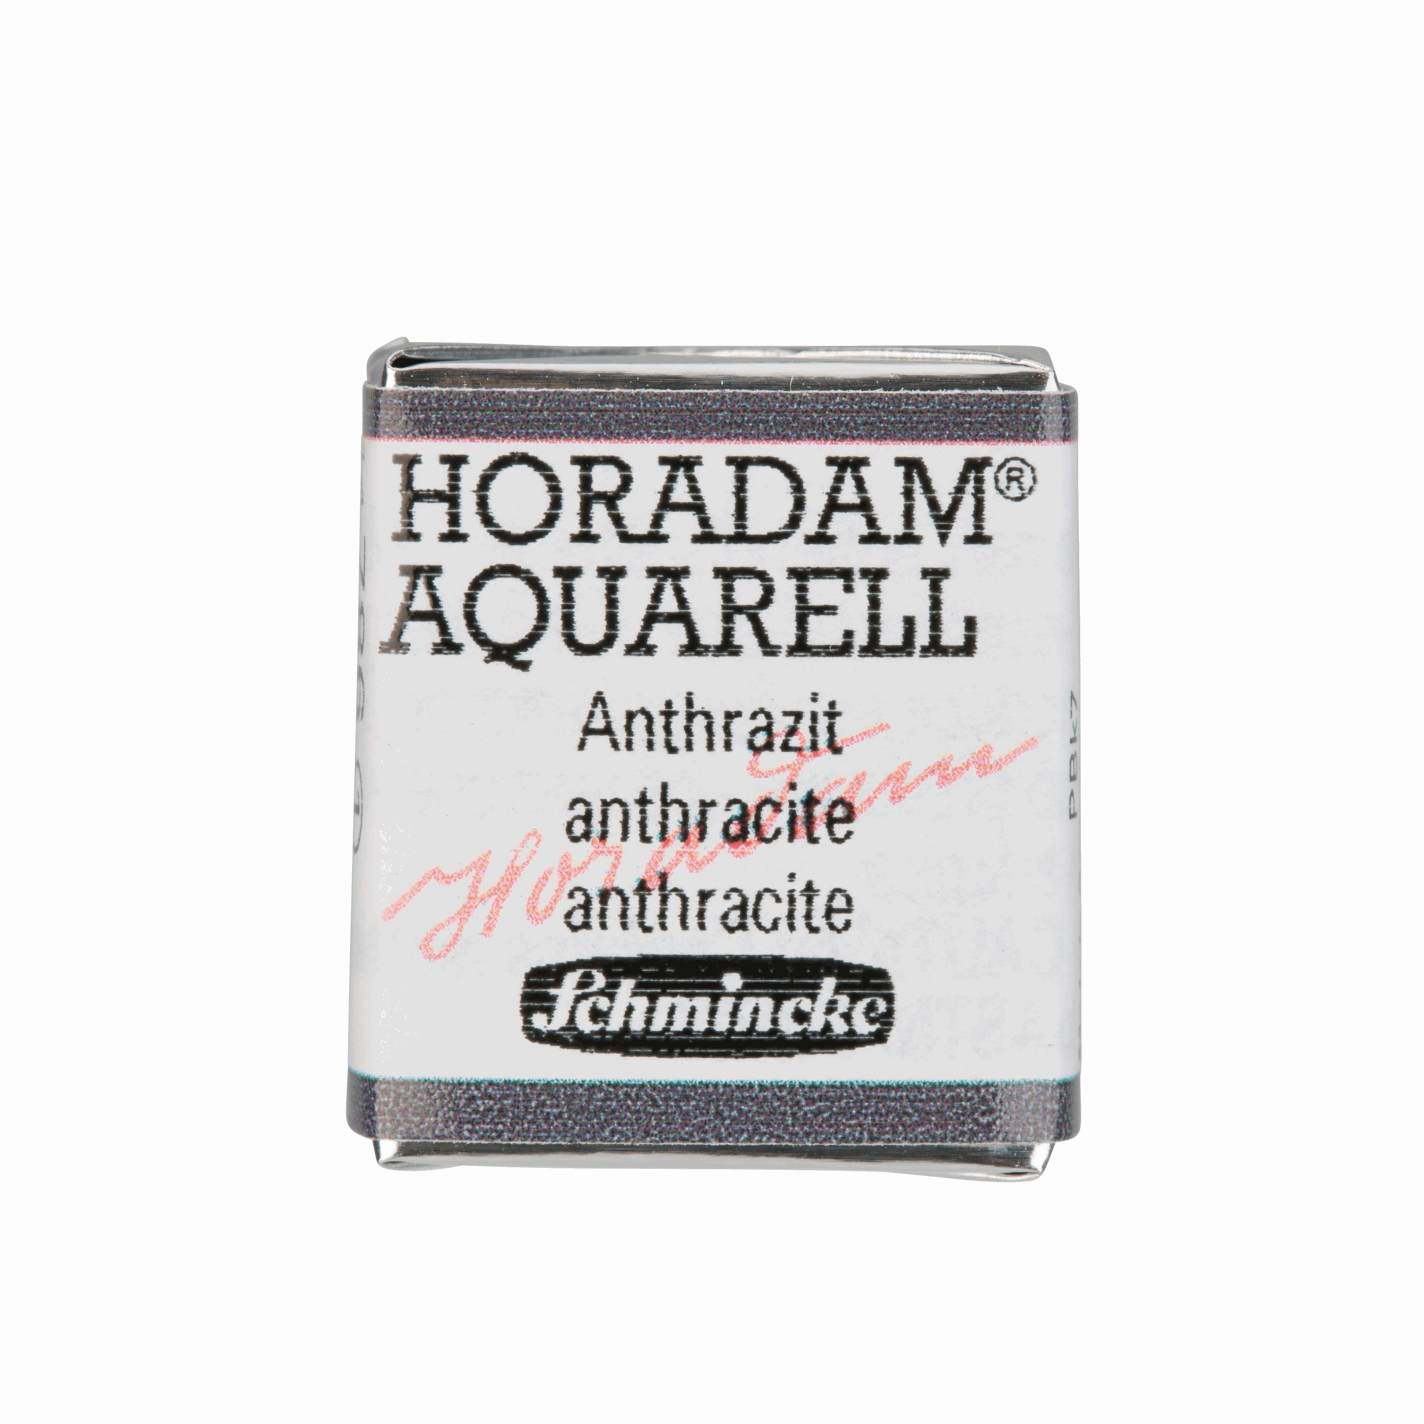 Schmincke Horadam Aquarell pans 1/2 pan Anthracite